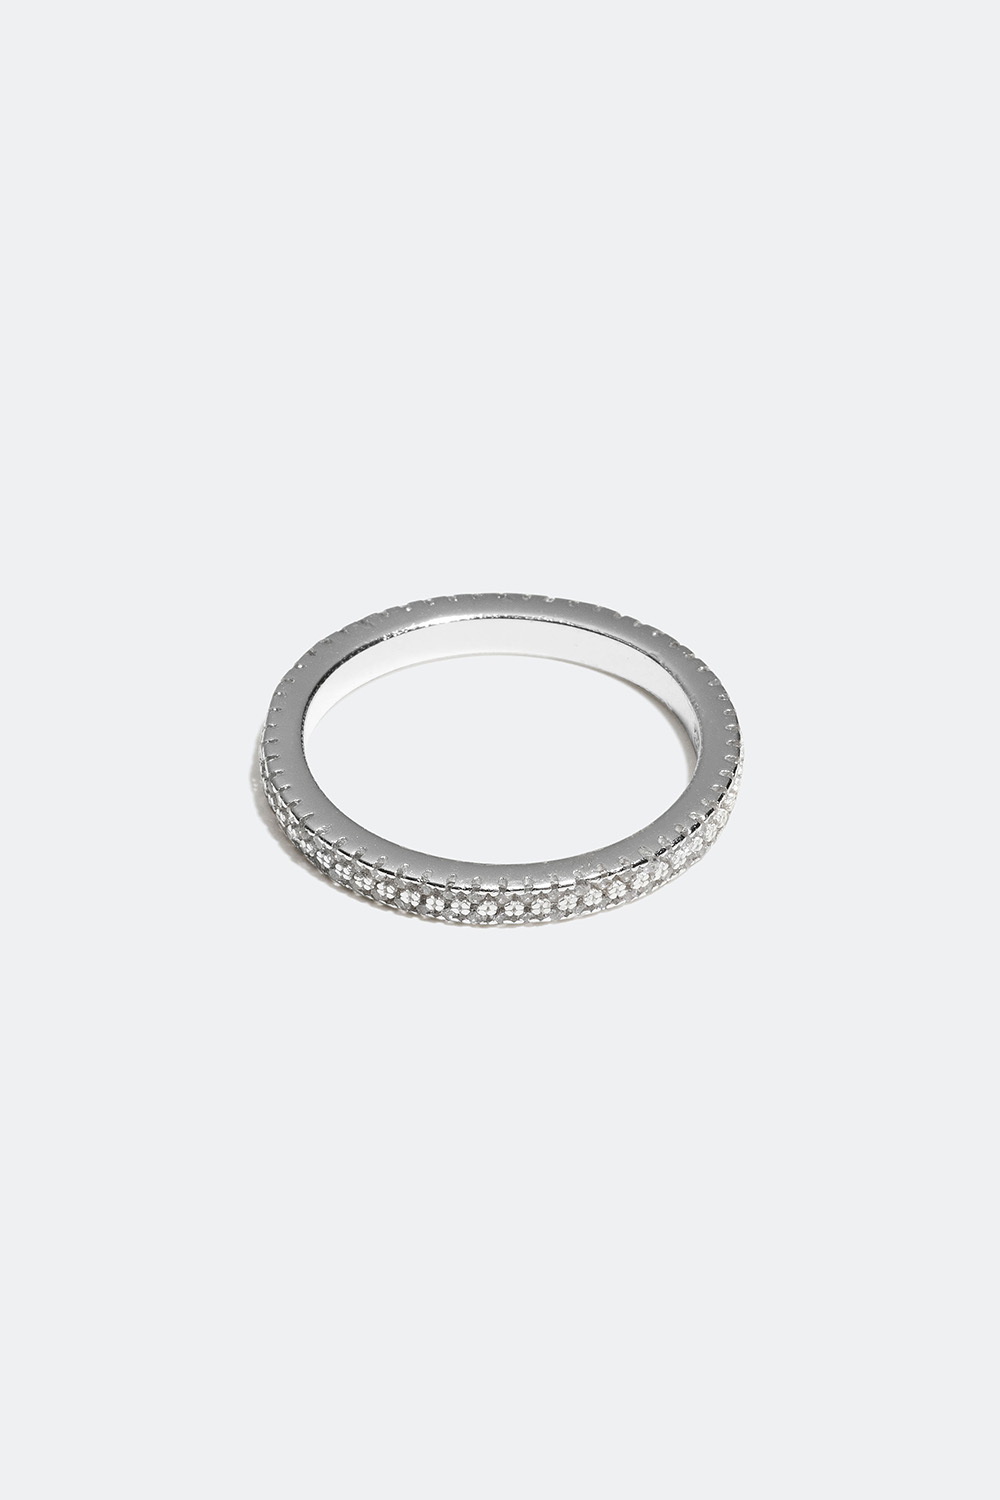 Ring i äkta silver med små Cubic Zirconia stenar i gruppen Äkta silver / Silverringar / Silver hos Glitter (55600055)